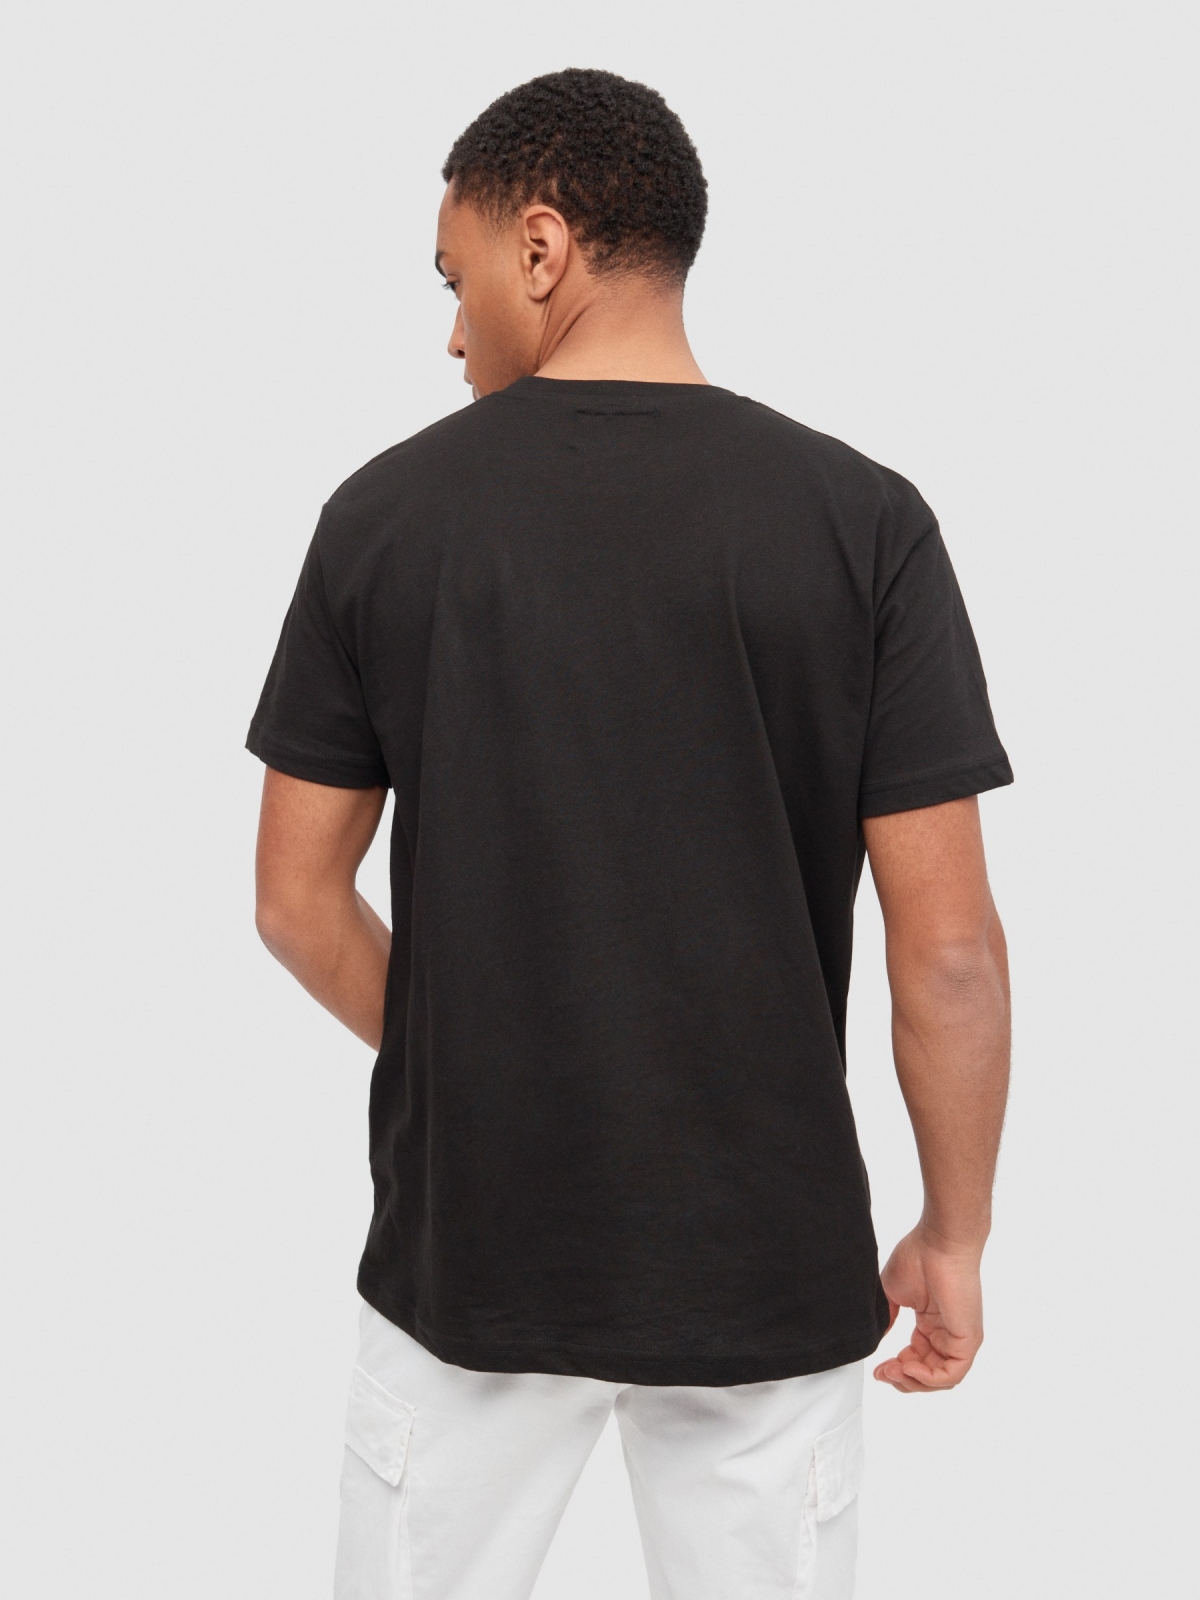 T-shirt básica de manga curta preto vista meia traseira